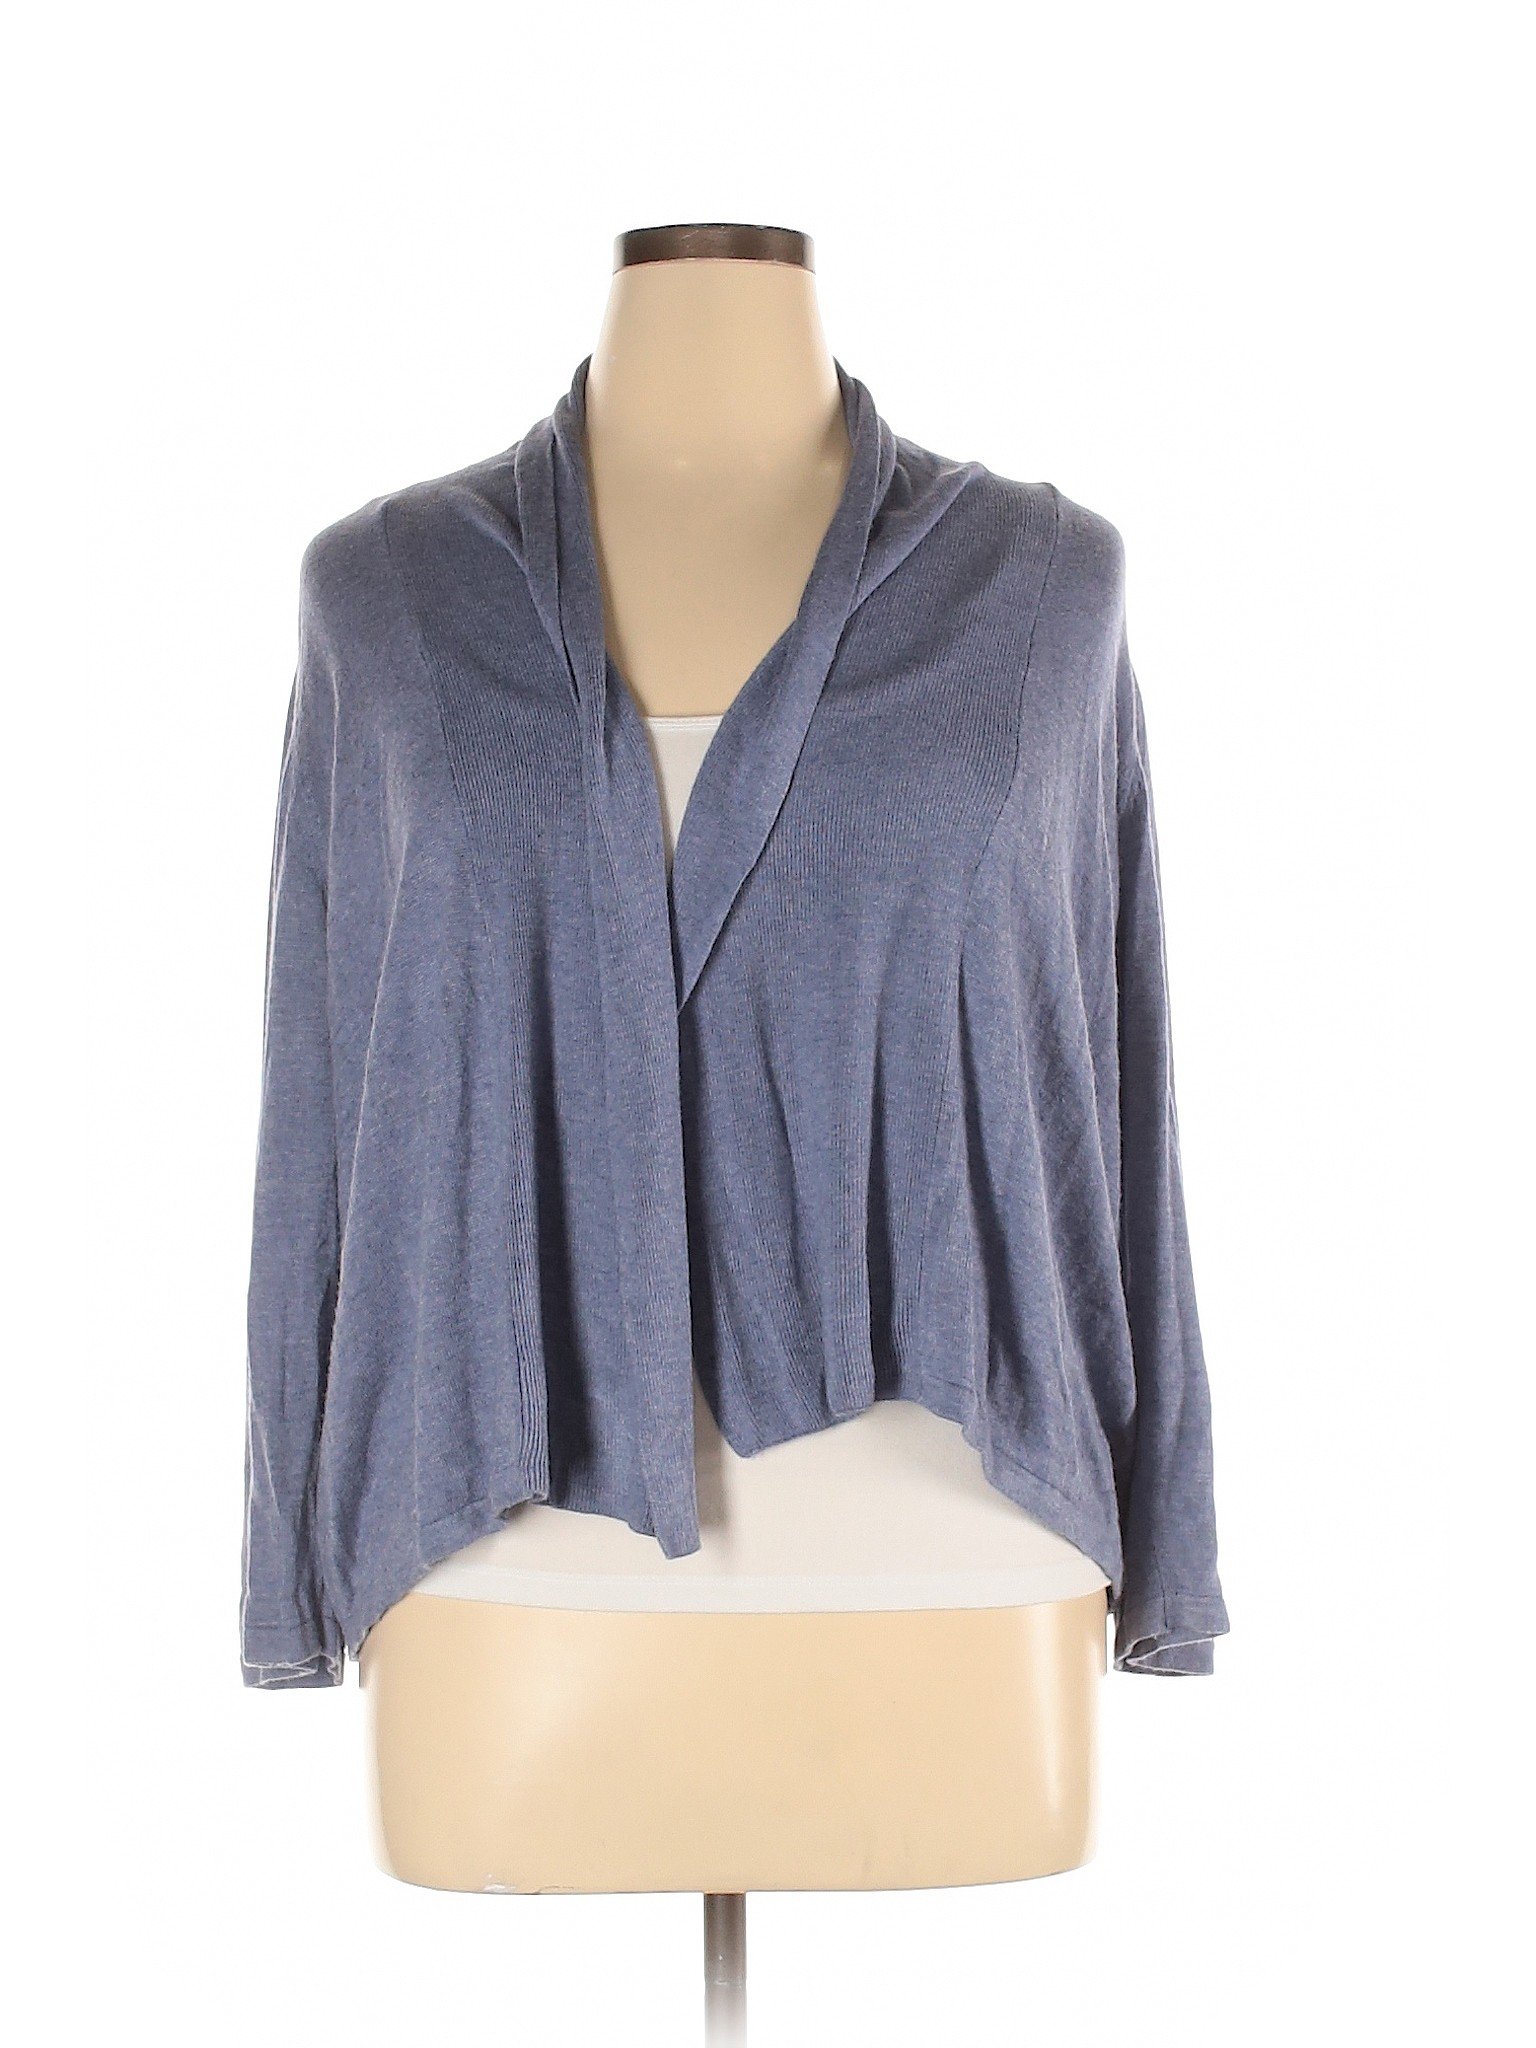 Cyrus Women Blue Cardigan XL | eBay